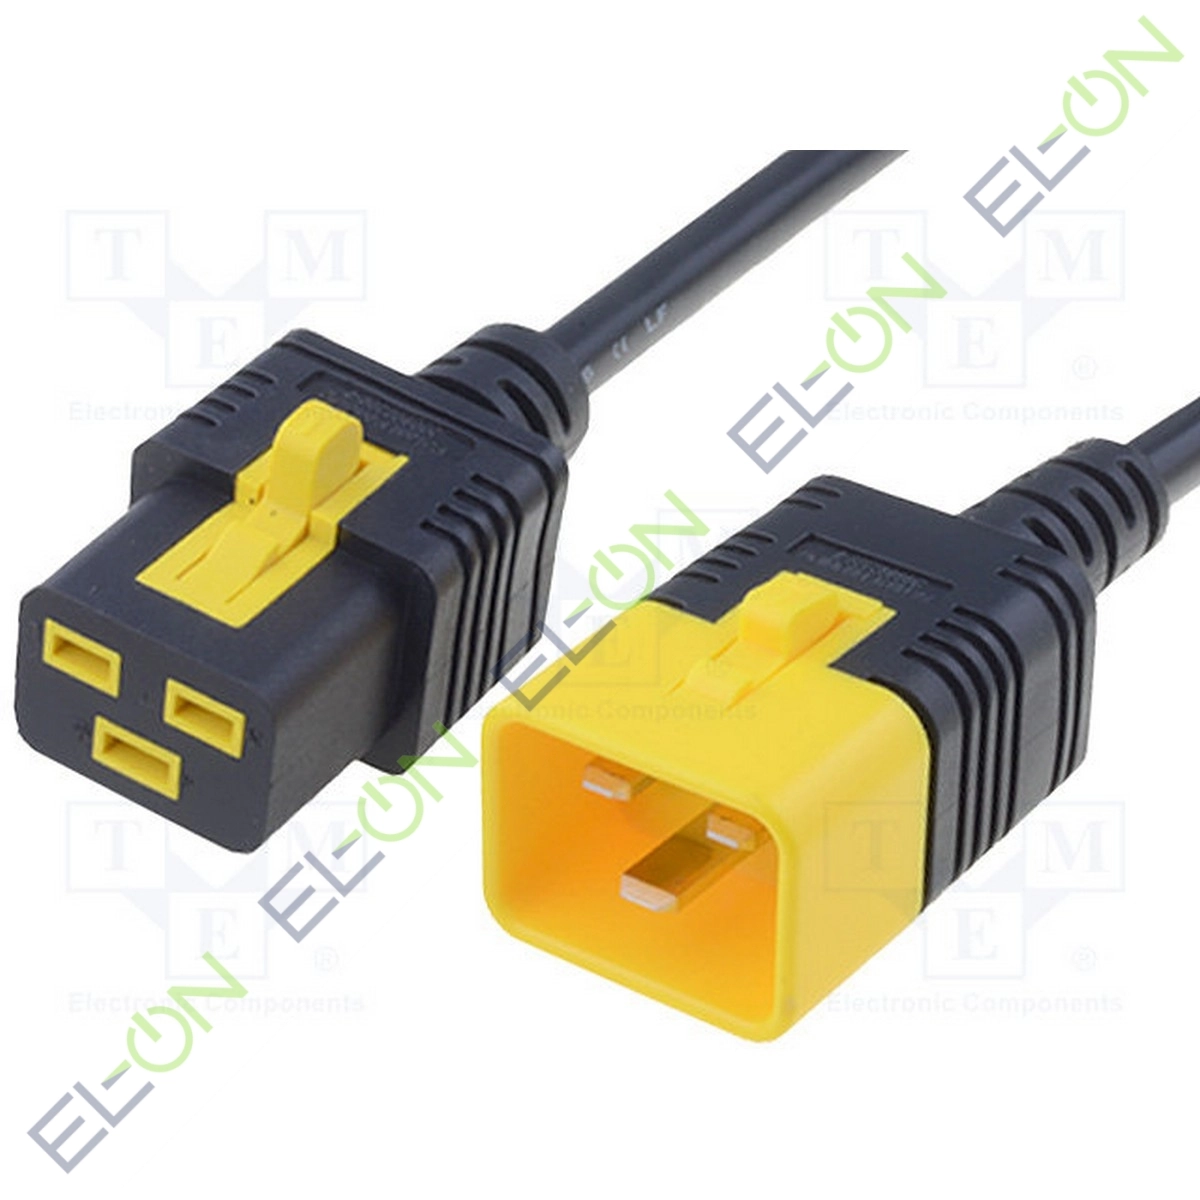 Iec 60320 c20. Кабель питания с19-с20. Кабель питания IEC c20. C19 c20 кабель питания. IEC c19 кабель.